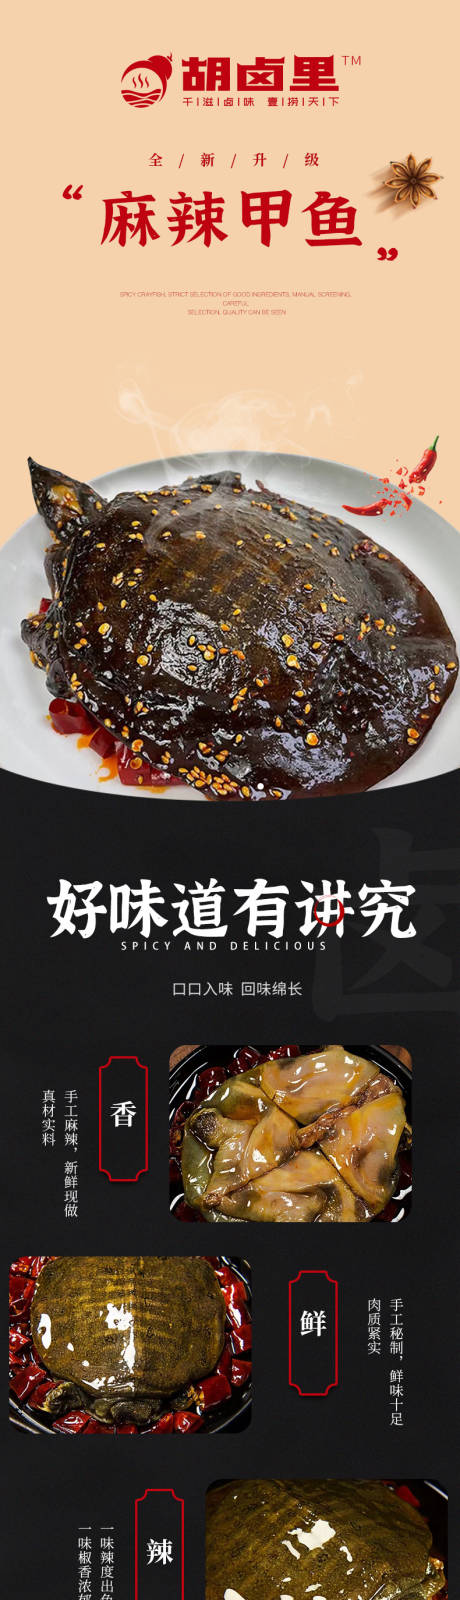 麻辣甲鱼宣传海报长图